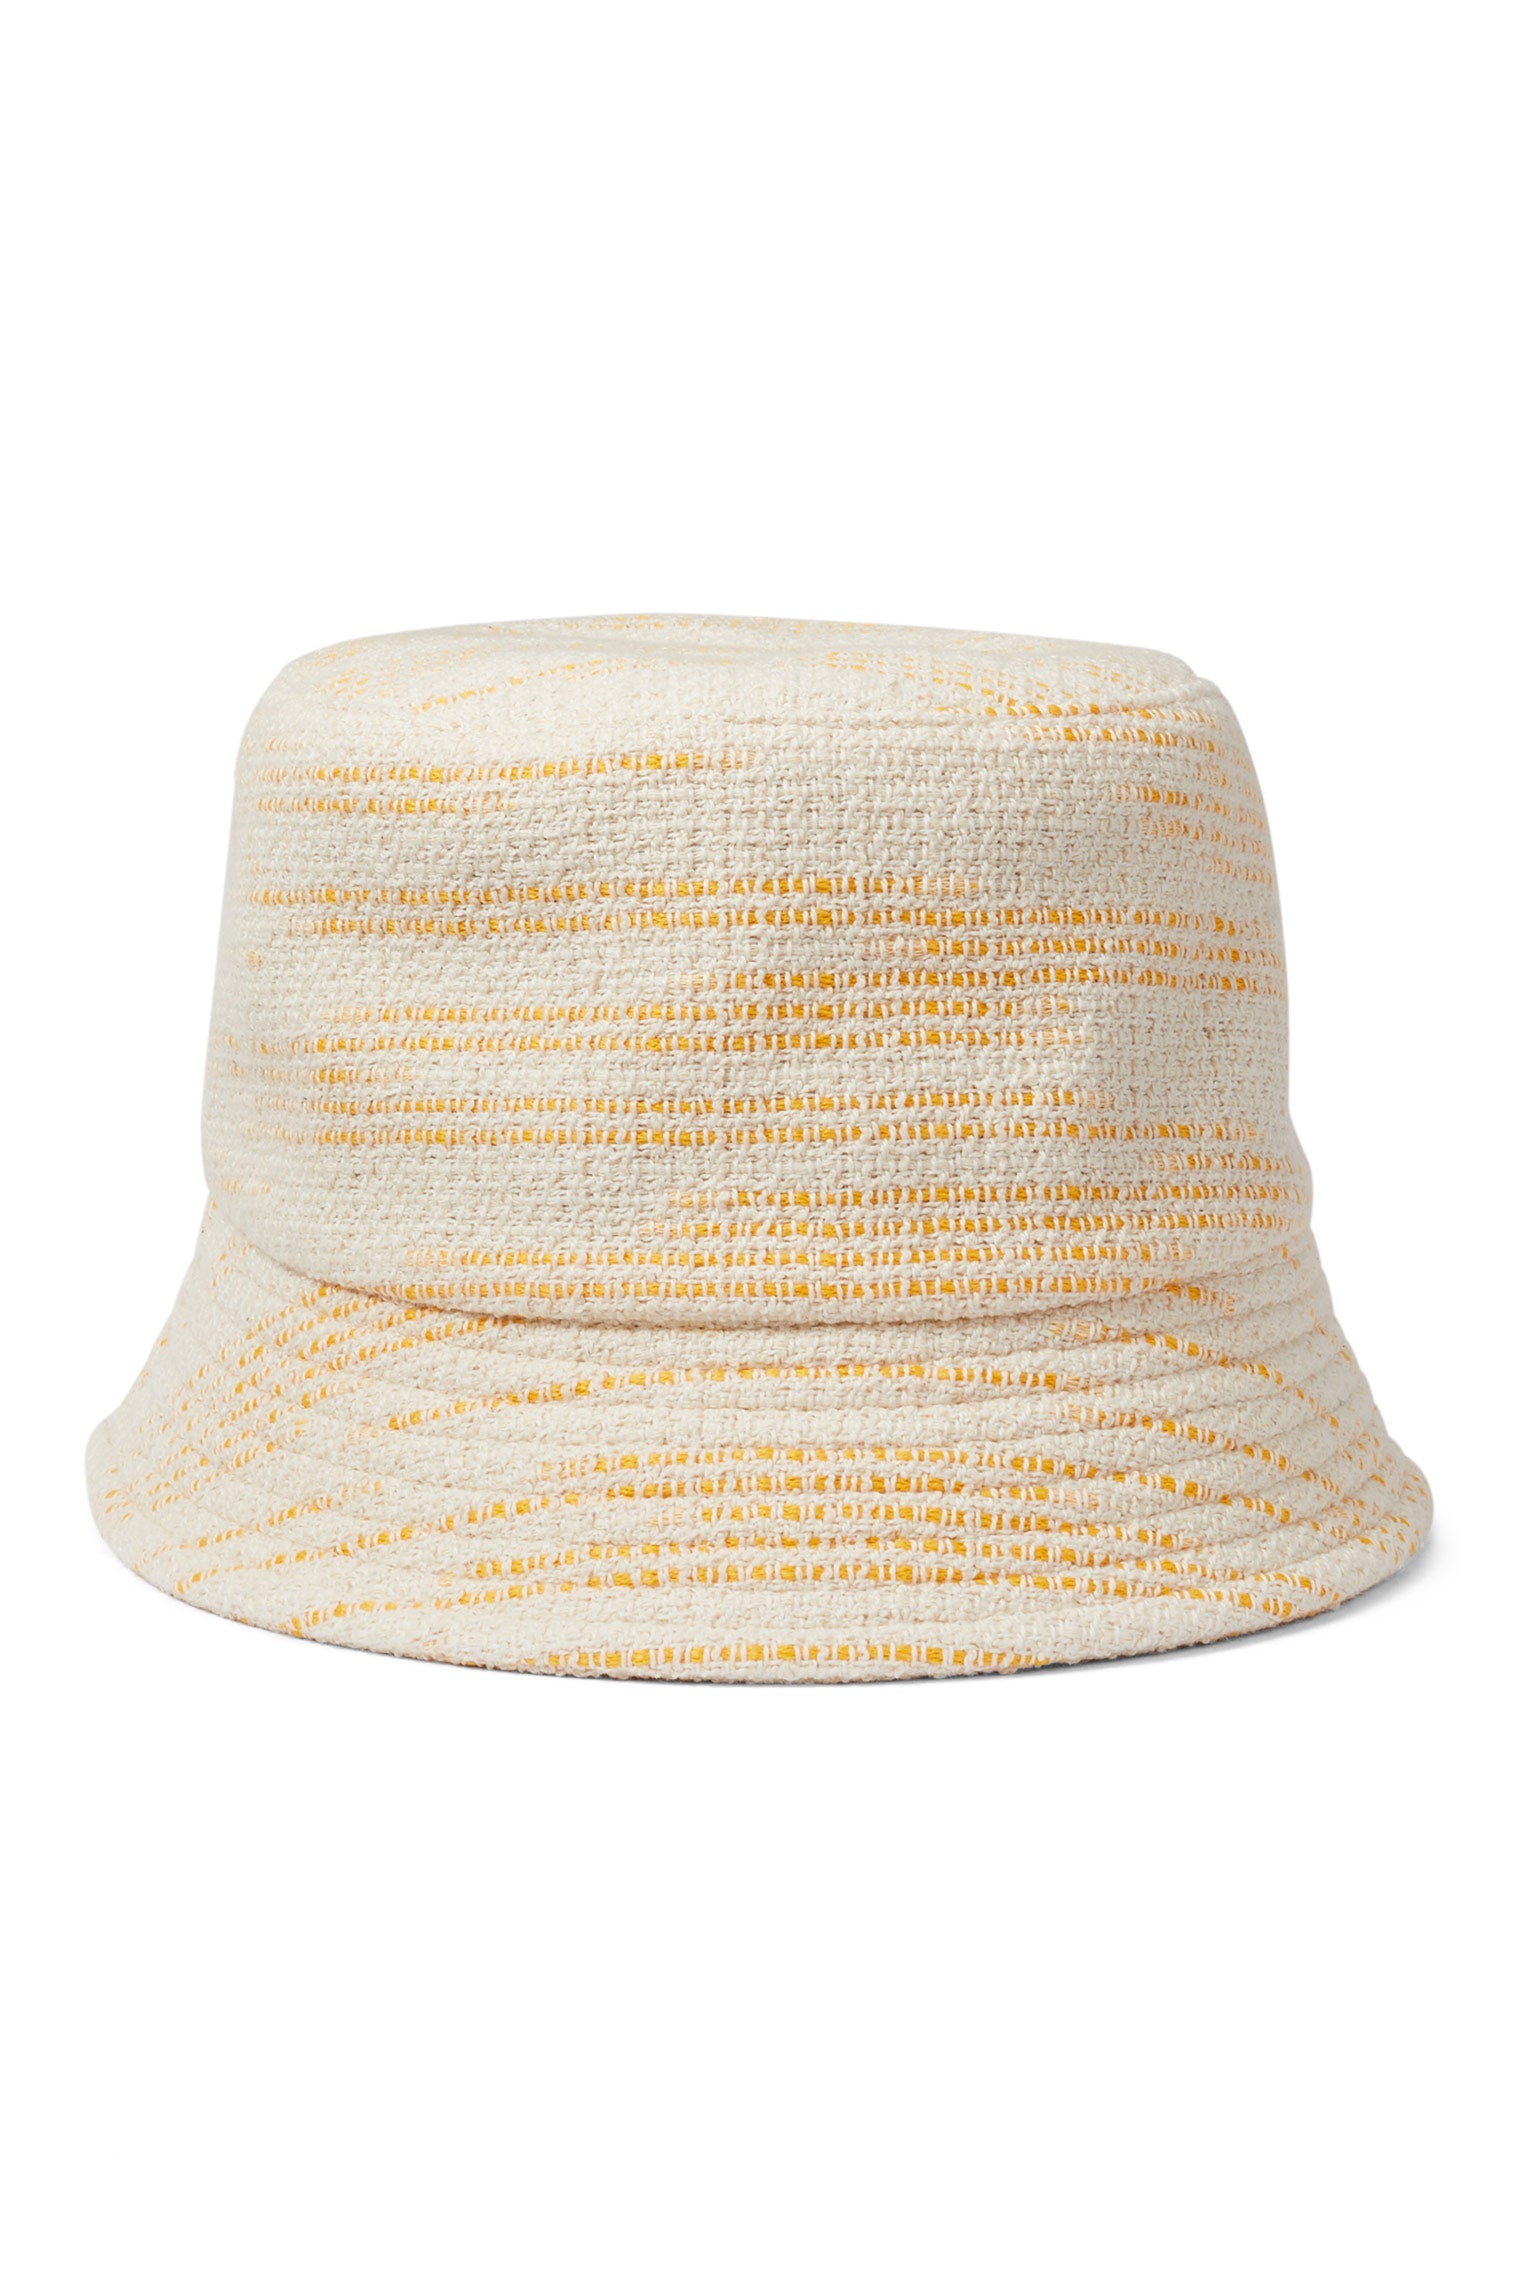 Rye Yellow Bucket Hat - Panamas & Sun Hats for Women - Lock & Co. Hatters London UK